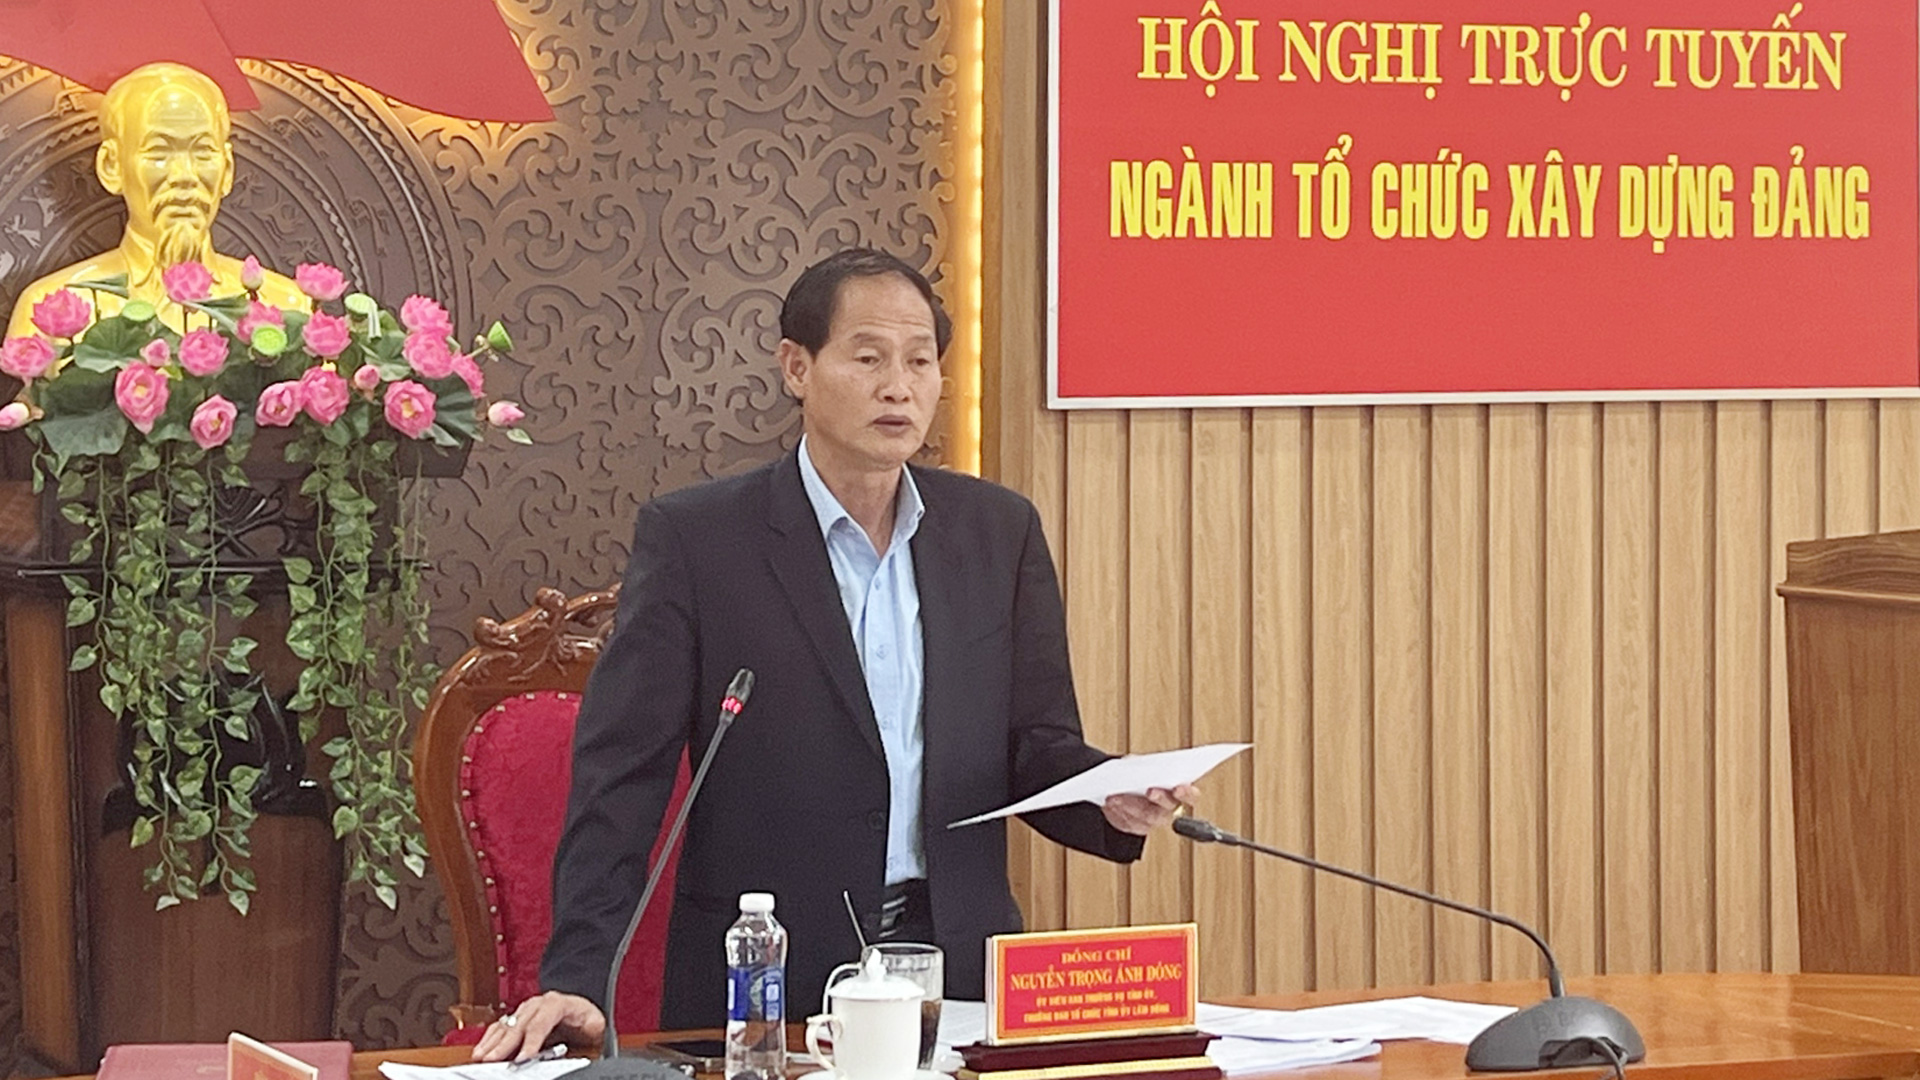 Đồng chí Nguyễn Trọng Ánh Đông – Ủy viên Ban Thường vụ, Trưởng Ban Tổ chức Tỉnh ủy chỉ đạo nhiệm vụ trọng tâm xây dựng Đảng 3 tháng còn lại của năm 2023